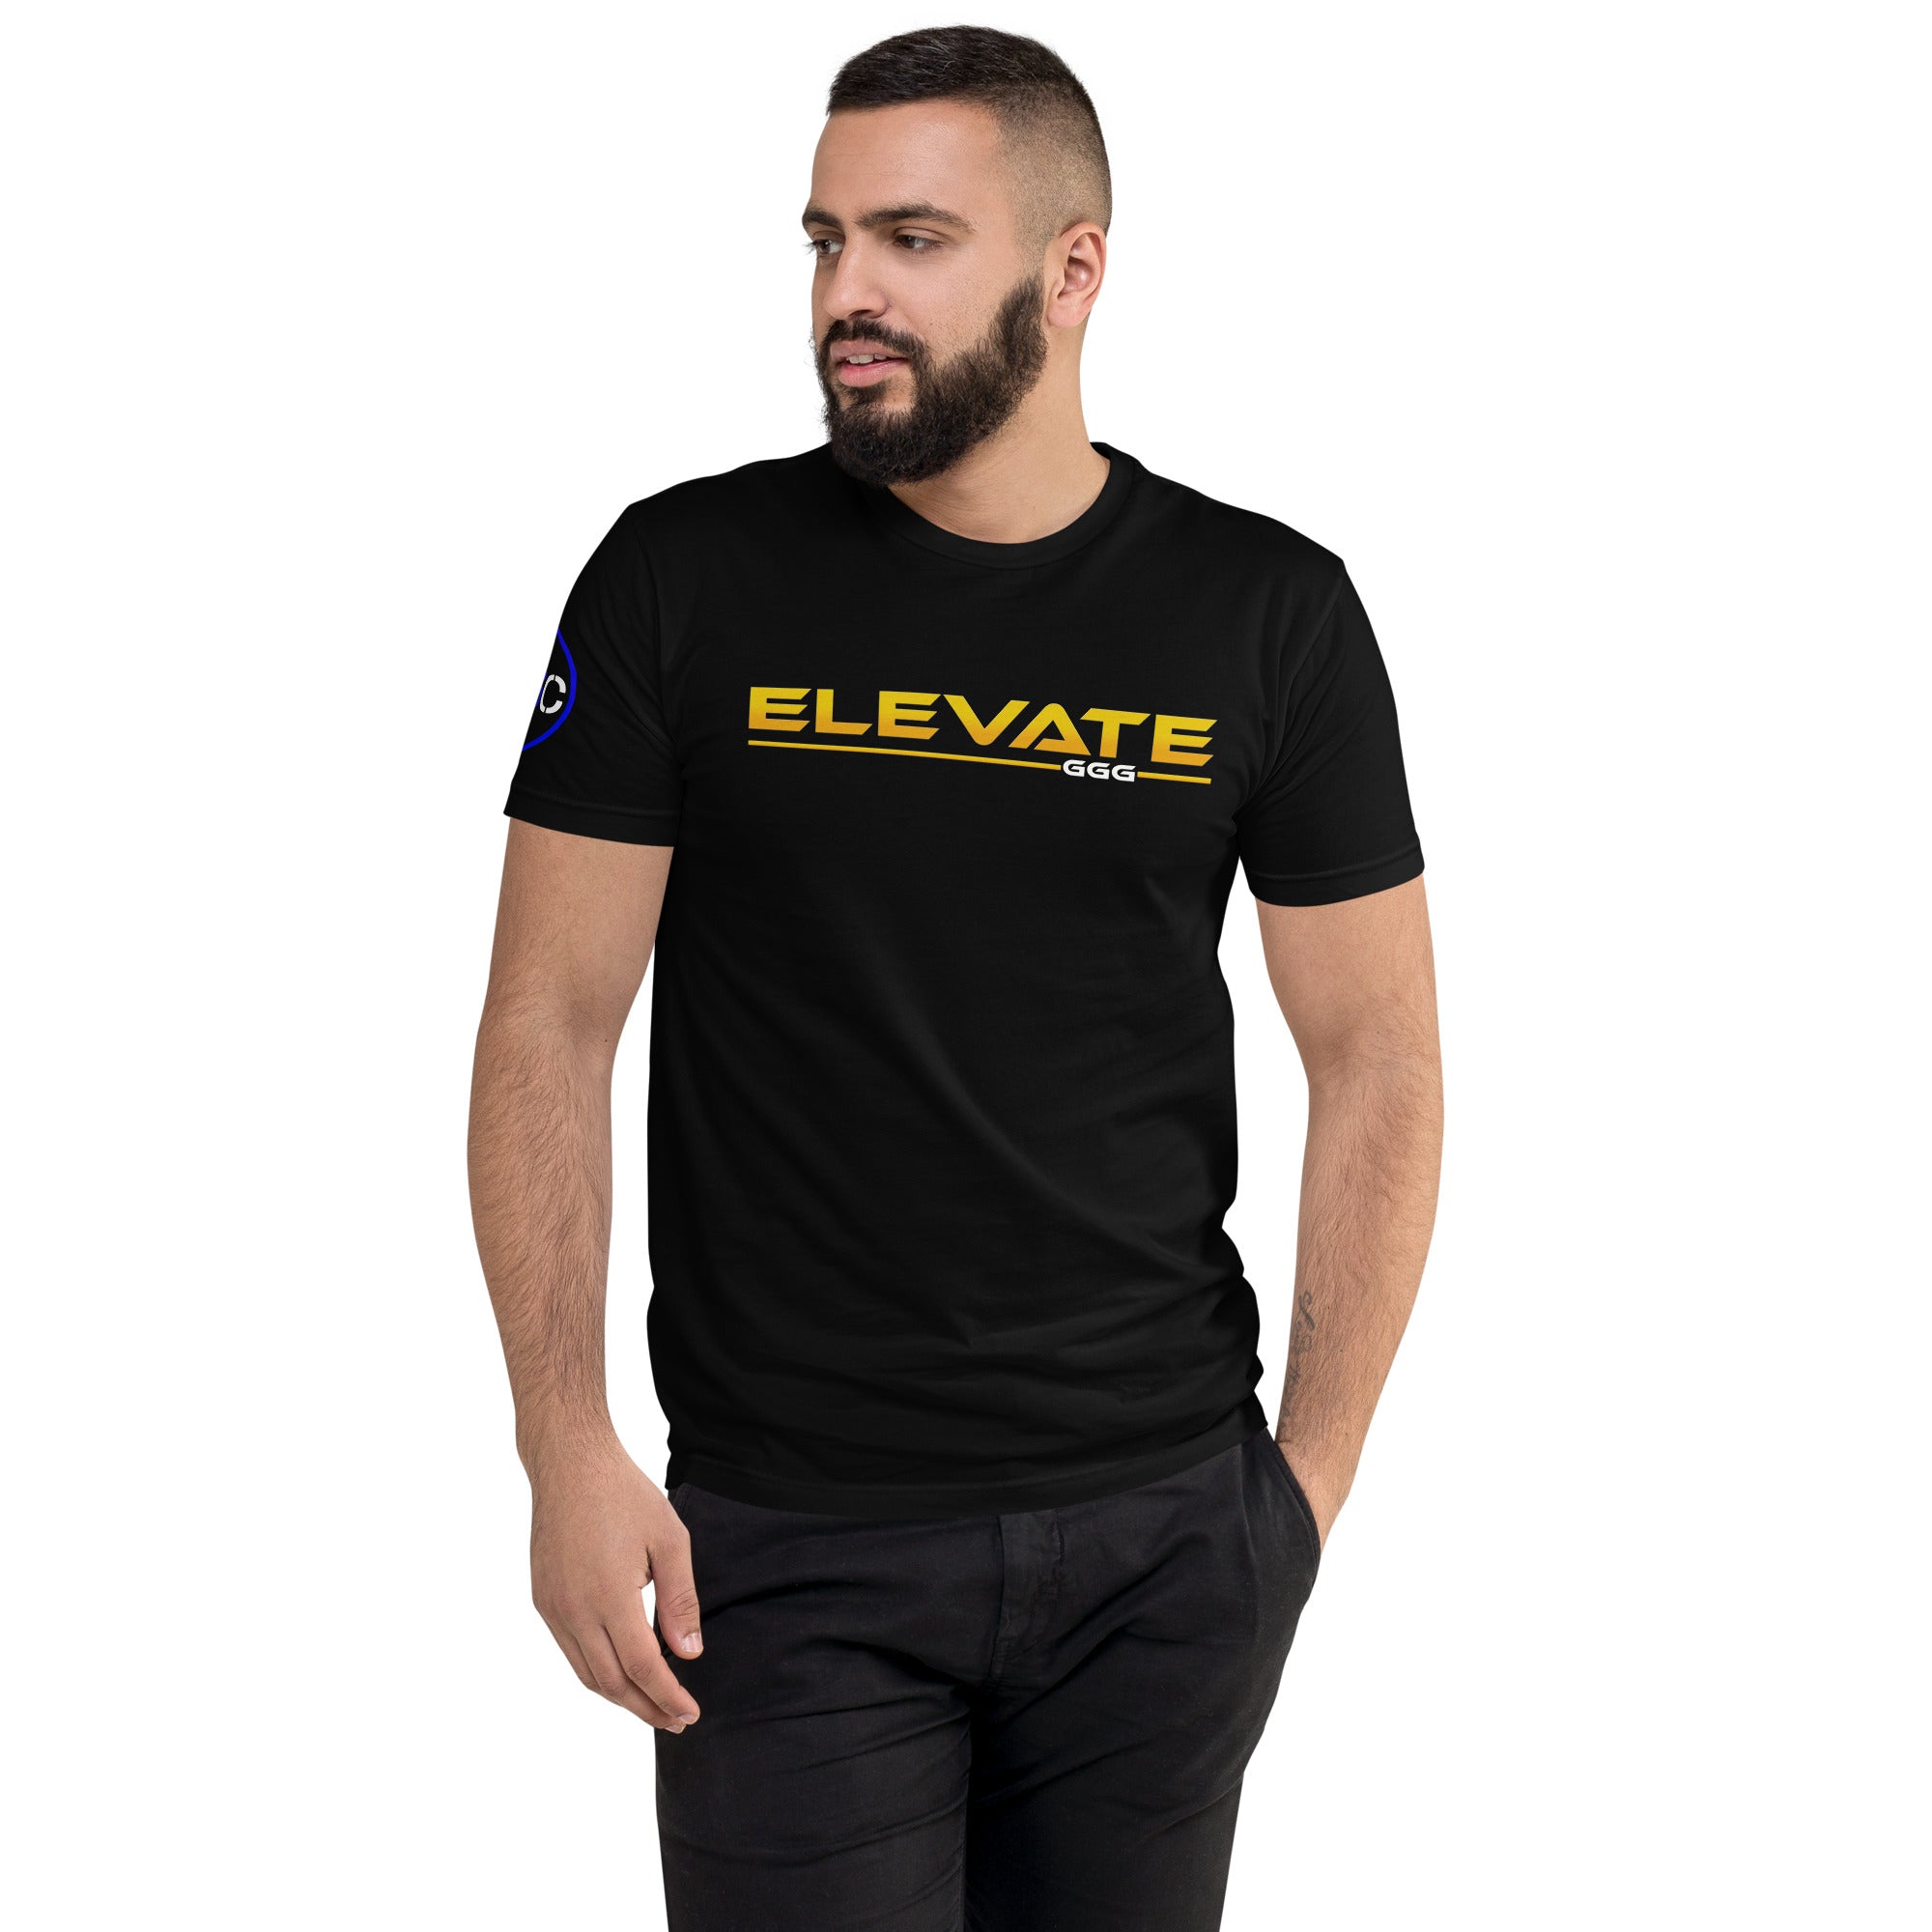 Elevate - G3 Culture